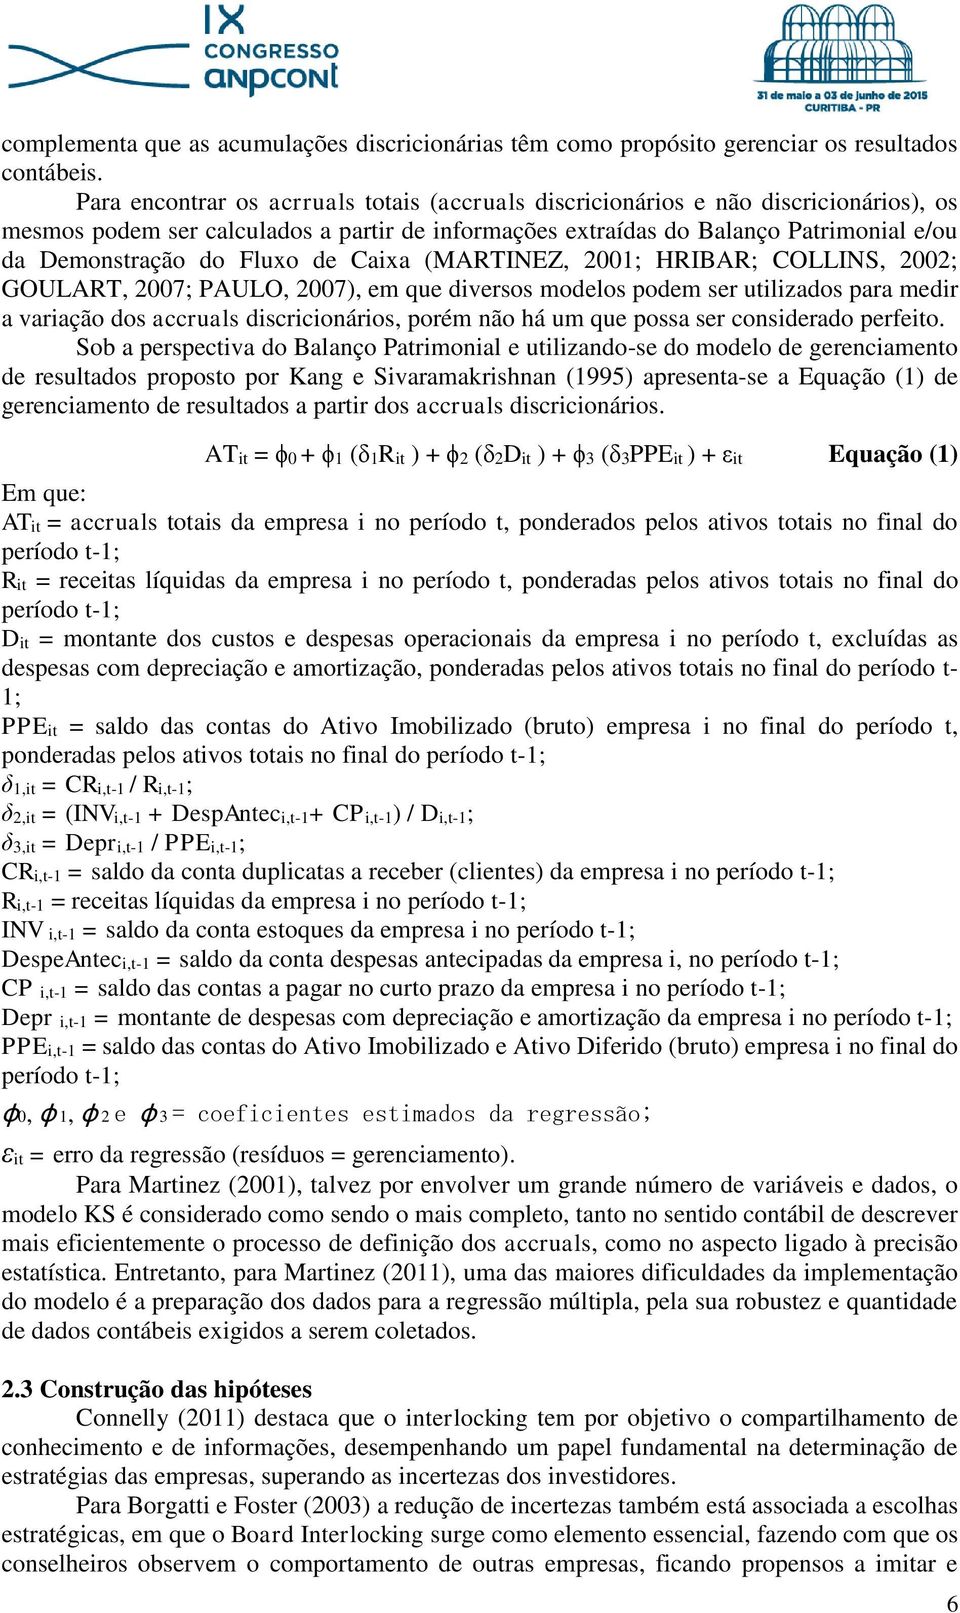 Fluxo de Caixa (MARTINEZ, 2001; HRIBAR; COLLINS, 2002; GOULART, 2007; PAULO, 2007), em que diversos modelos podem ser utilizados para medir a variação dos accruals discricionários, porém não há um